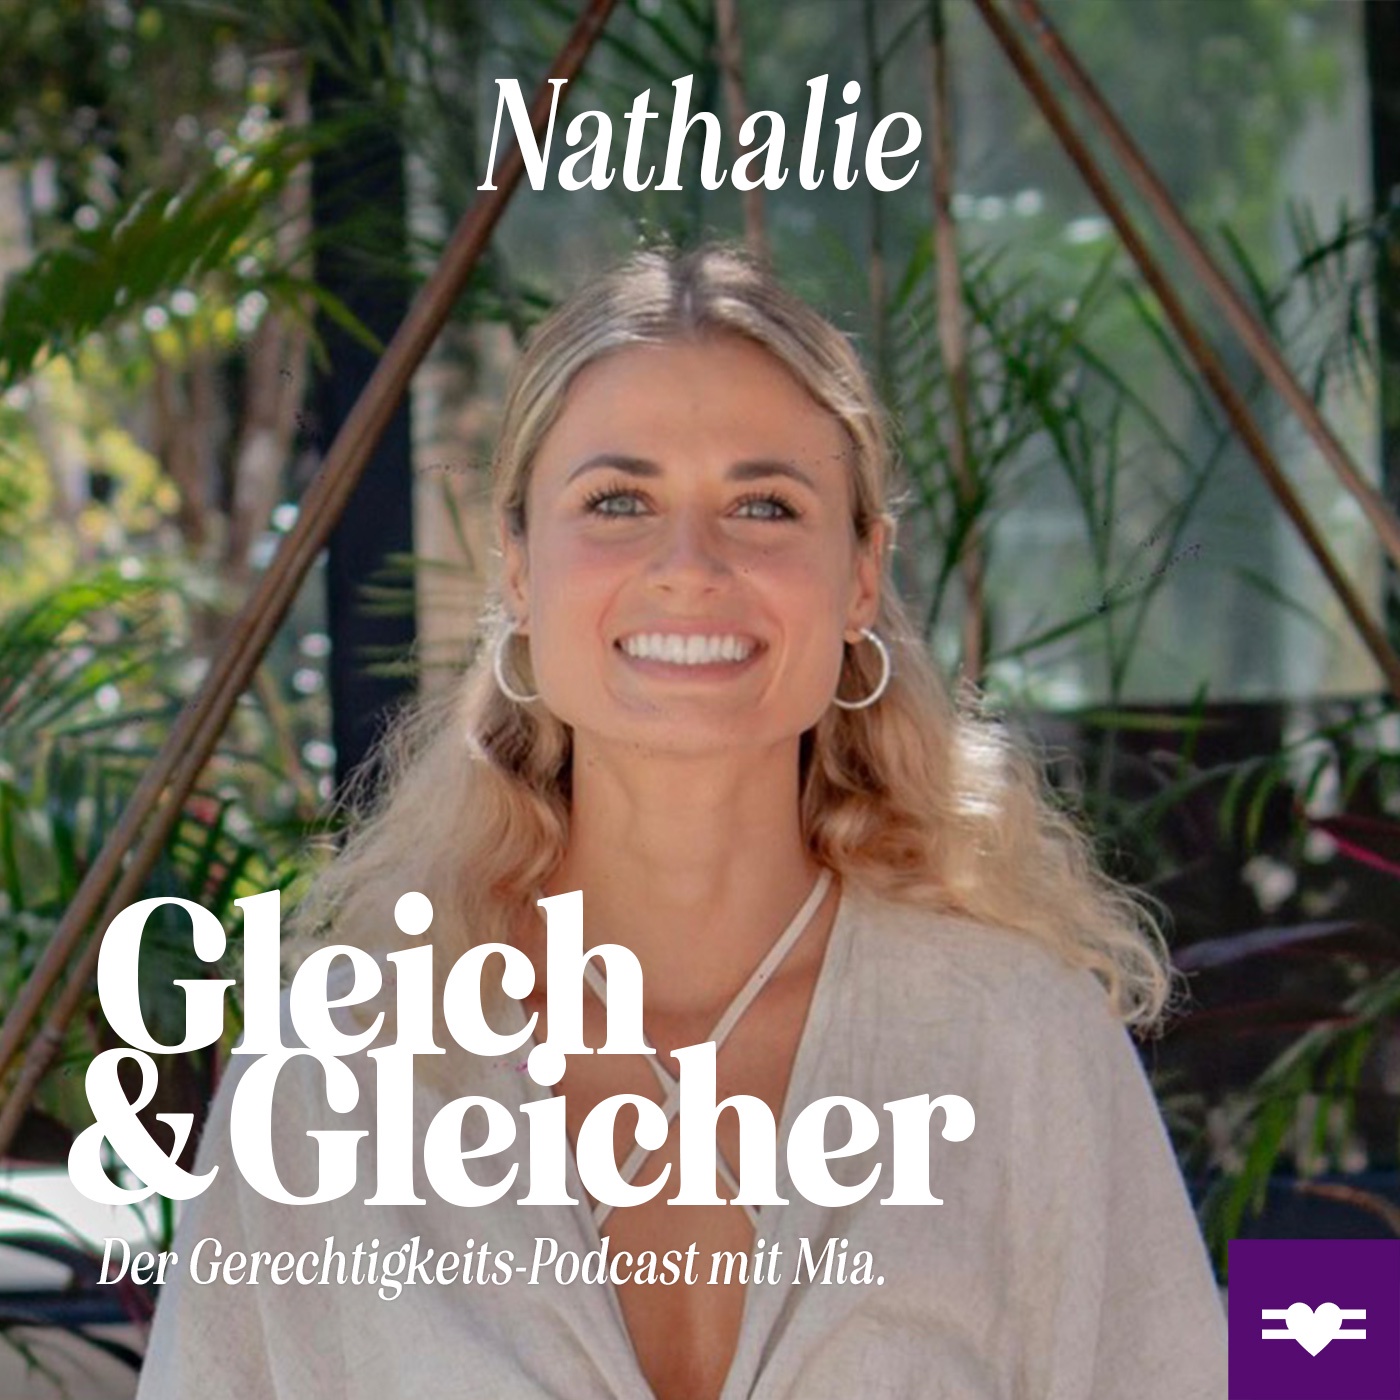 Nathalie über Gesundheit, Heilung & vegane Ernährung